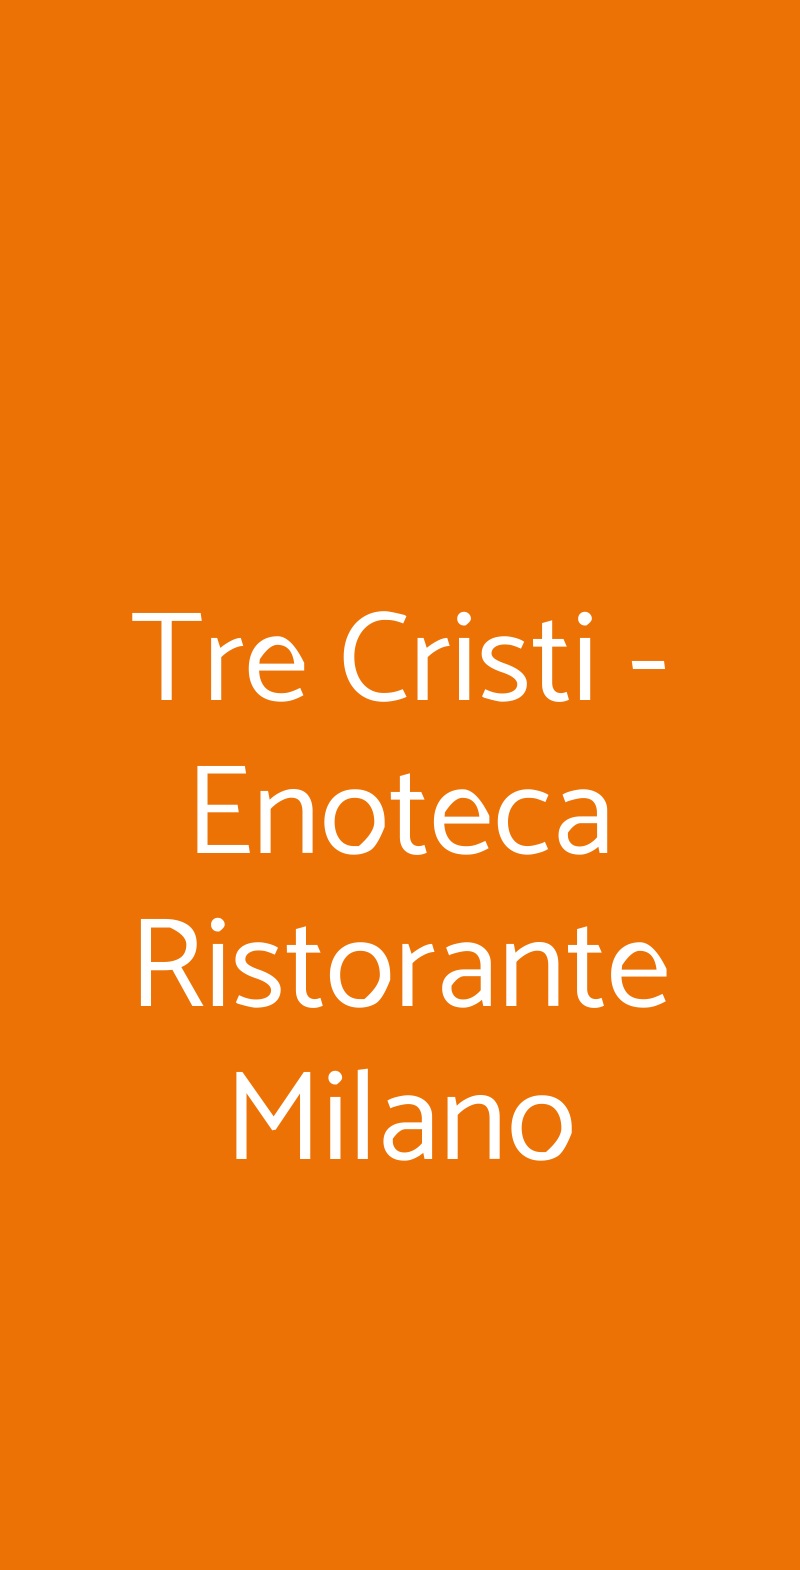 Tre Cristi - Enoteca Ristorante Milano Milano menù 1 pagina